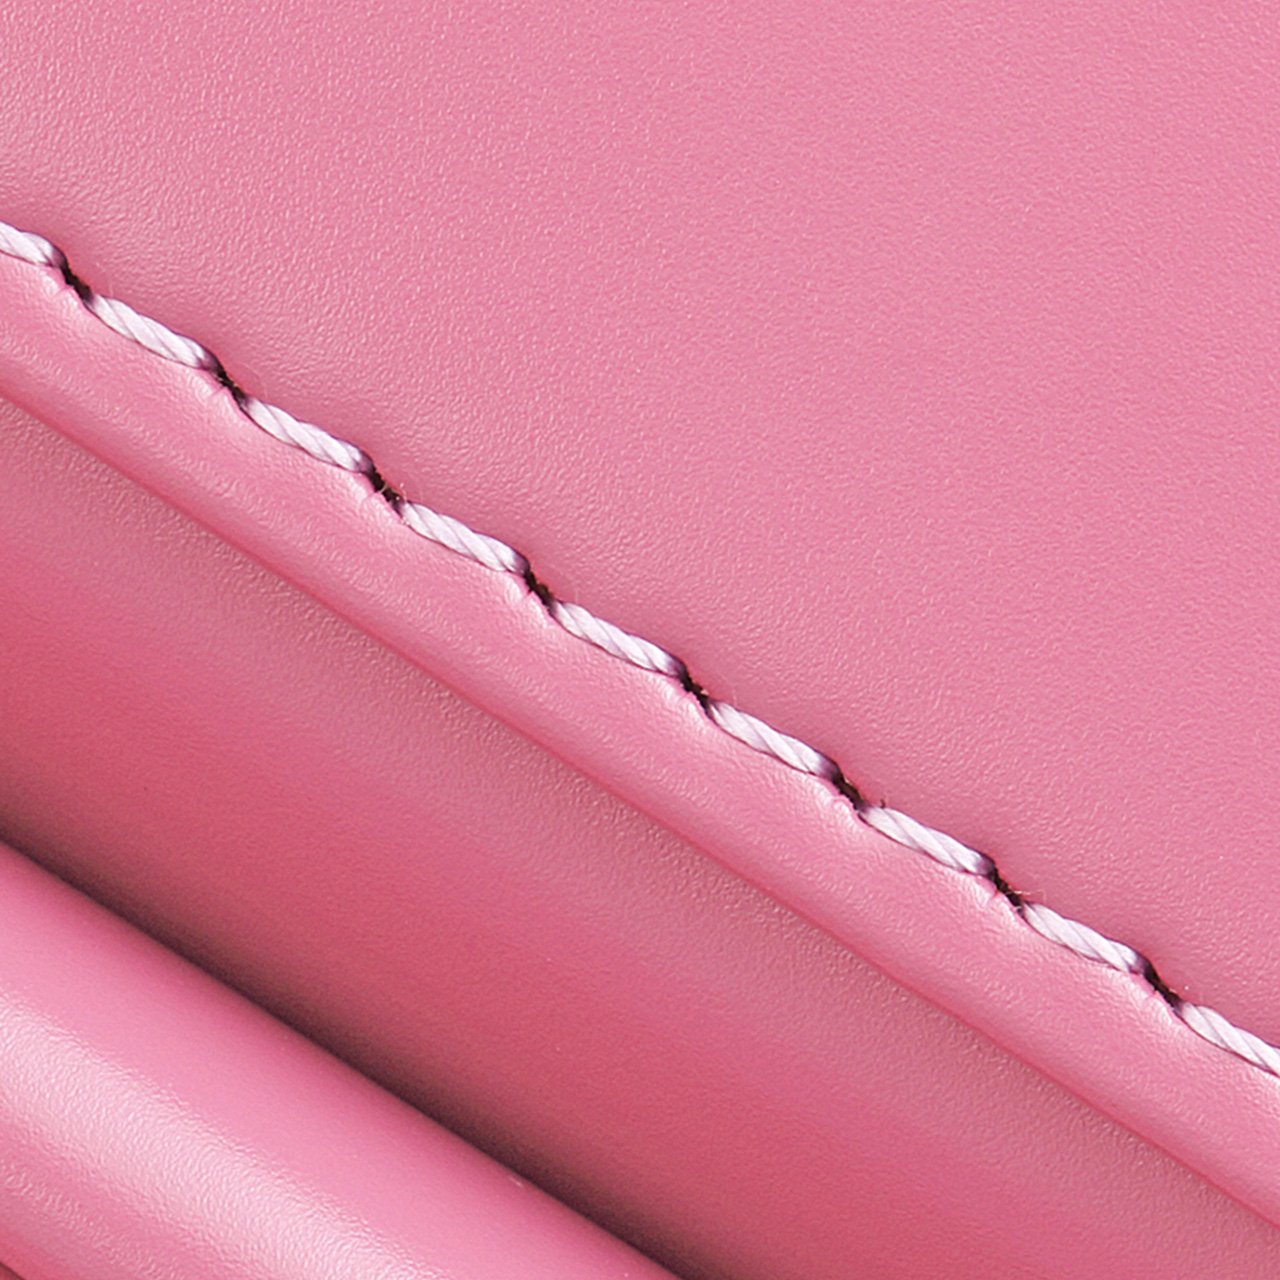 ステッチは、本体色を引き立てるペールピンク